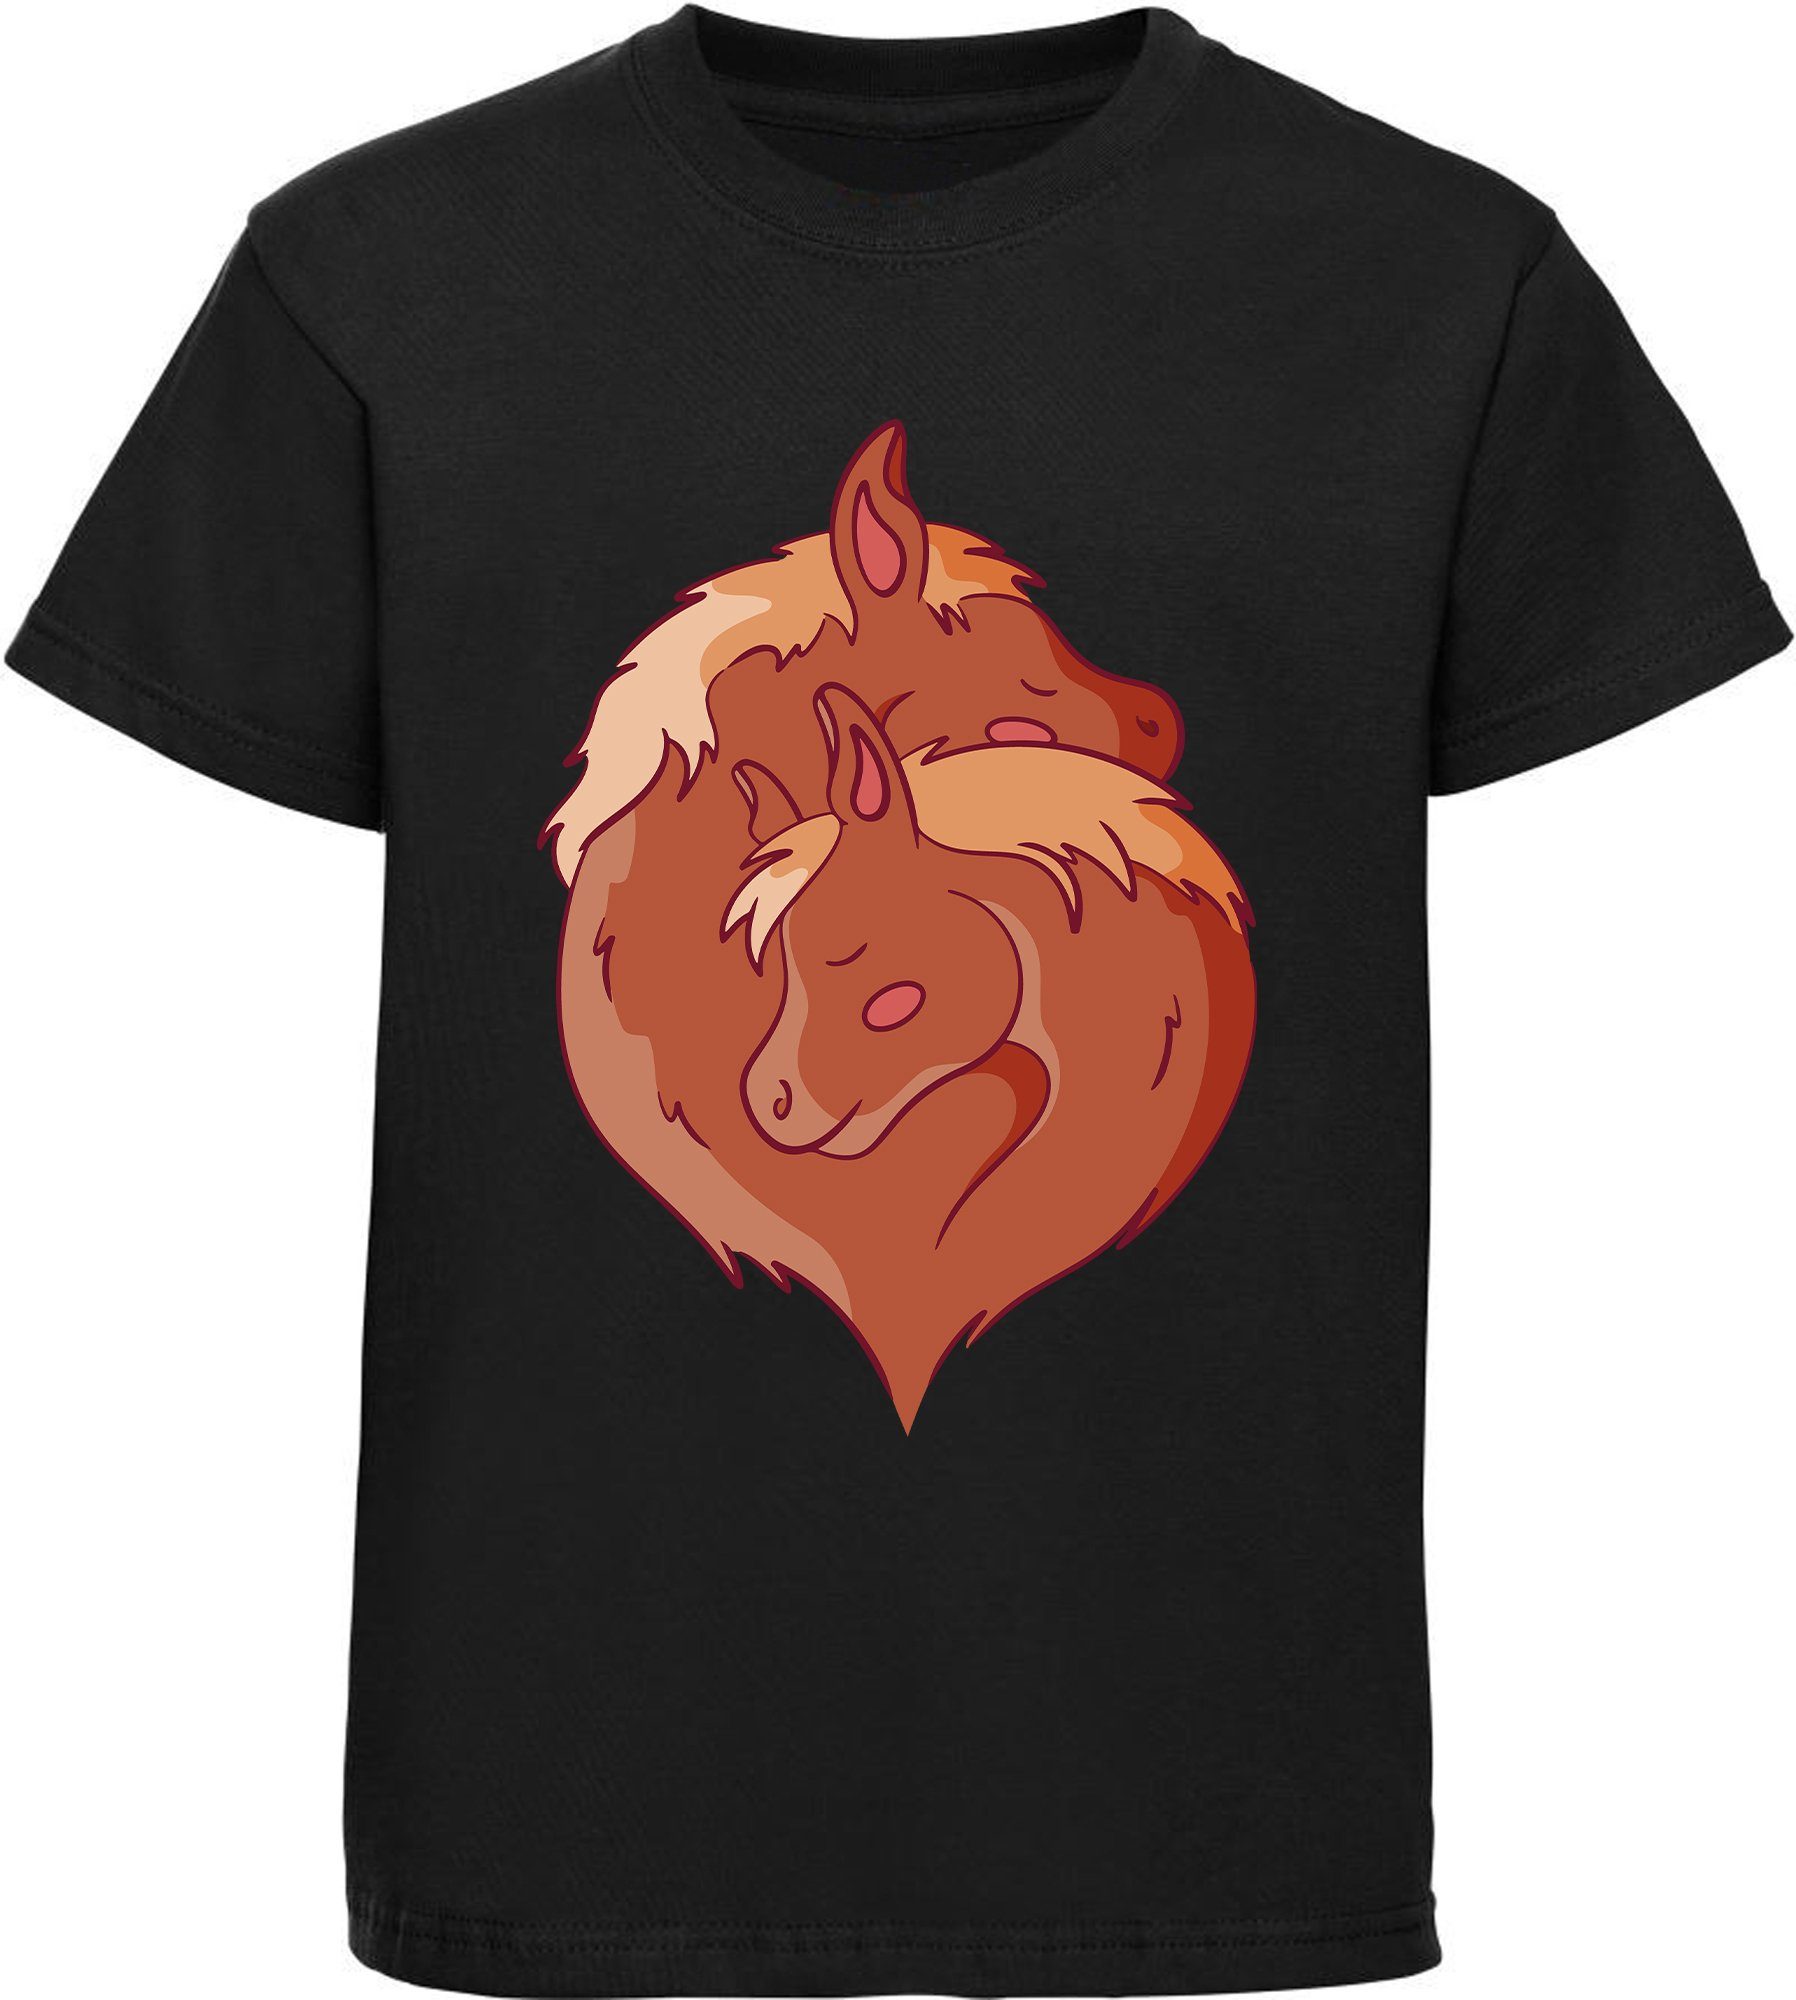 MyDesign24 Print-Shirt bedrucktes Mädchen T-Shirt zwei kuschelnde Pferde im Yin Yang Stil Baumwollshirt mit Aufdruck, i152 schwarz